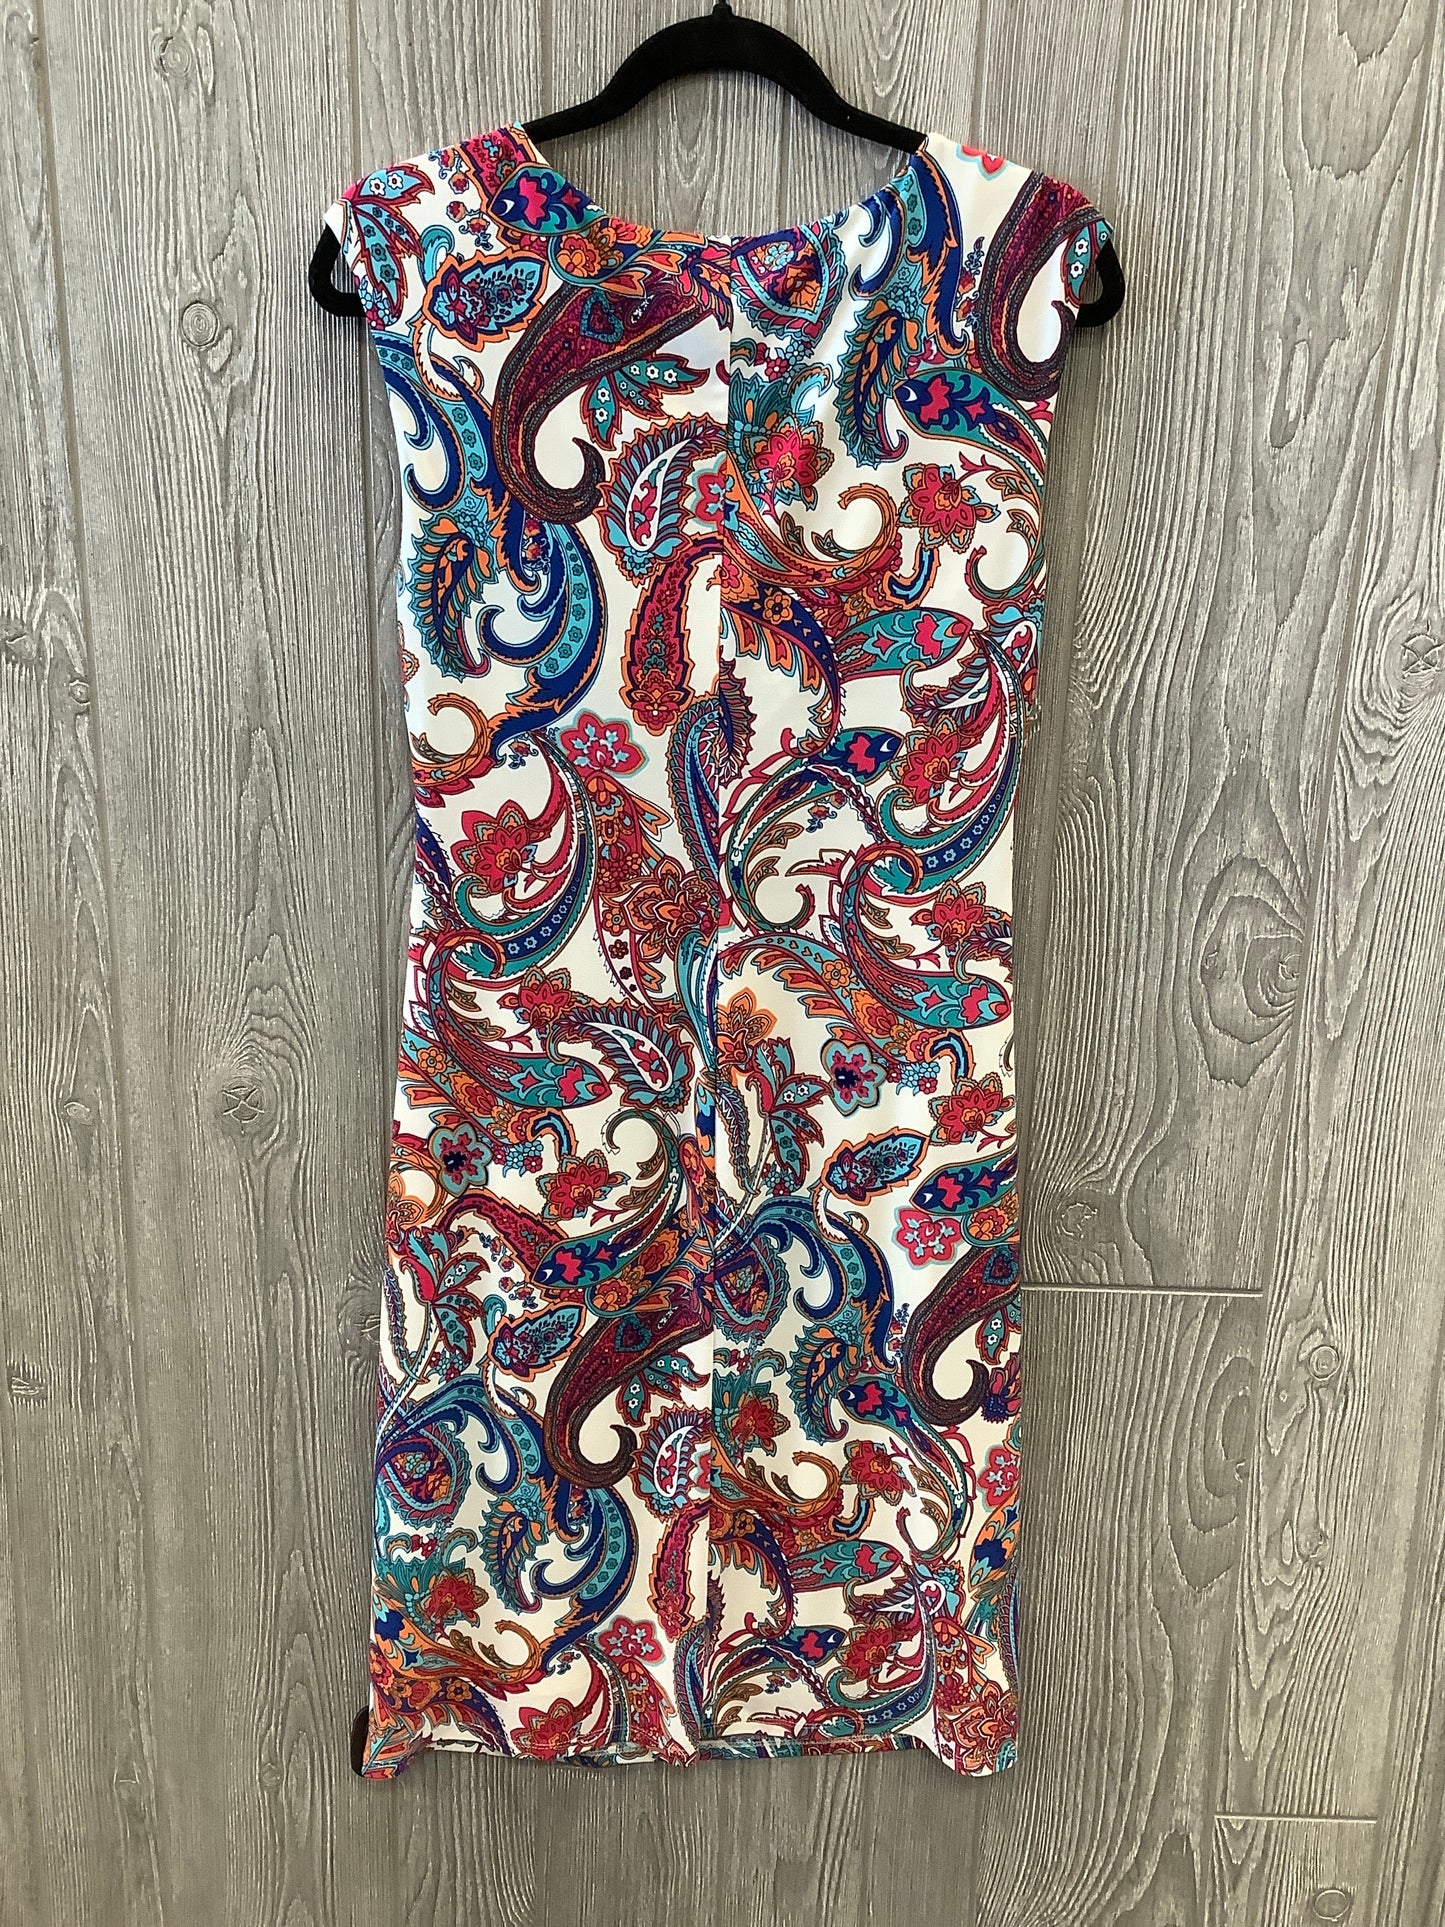 Dress Party Midi By Lauren By Ralph Lauren  Size: L